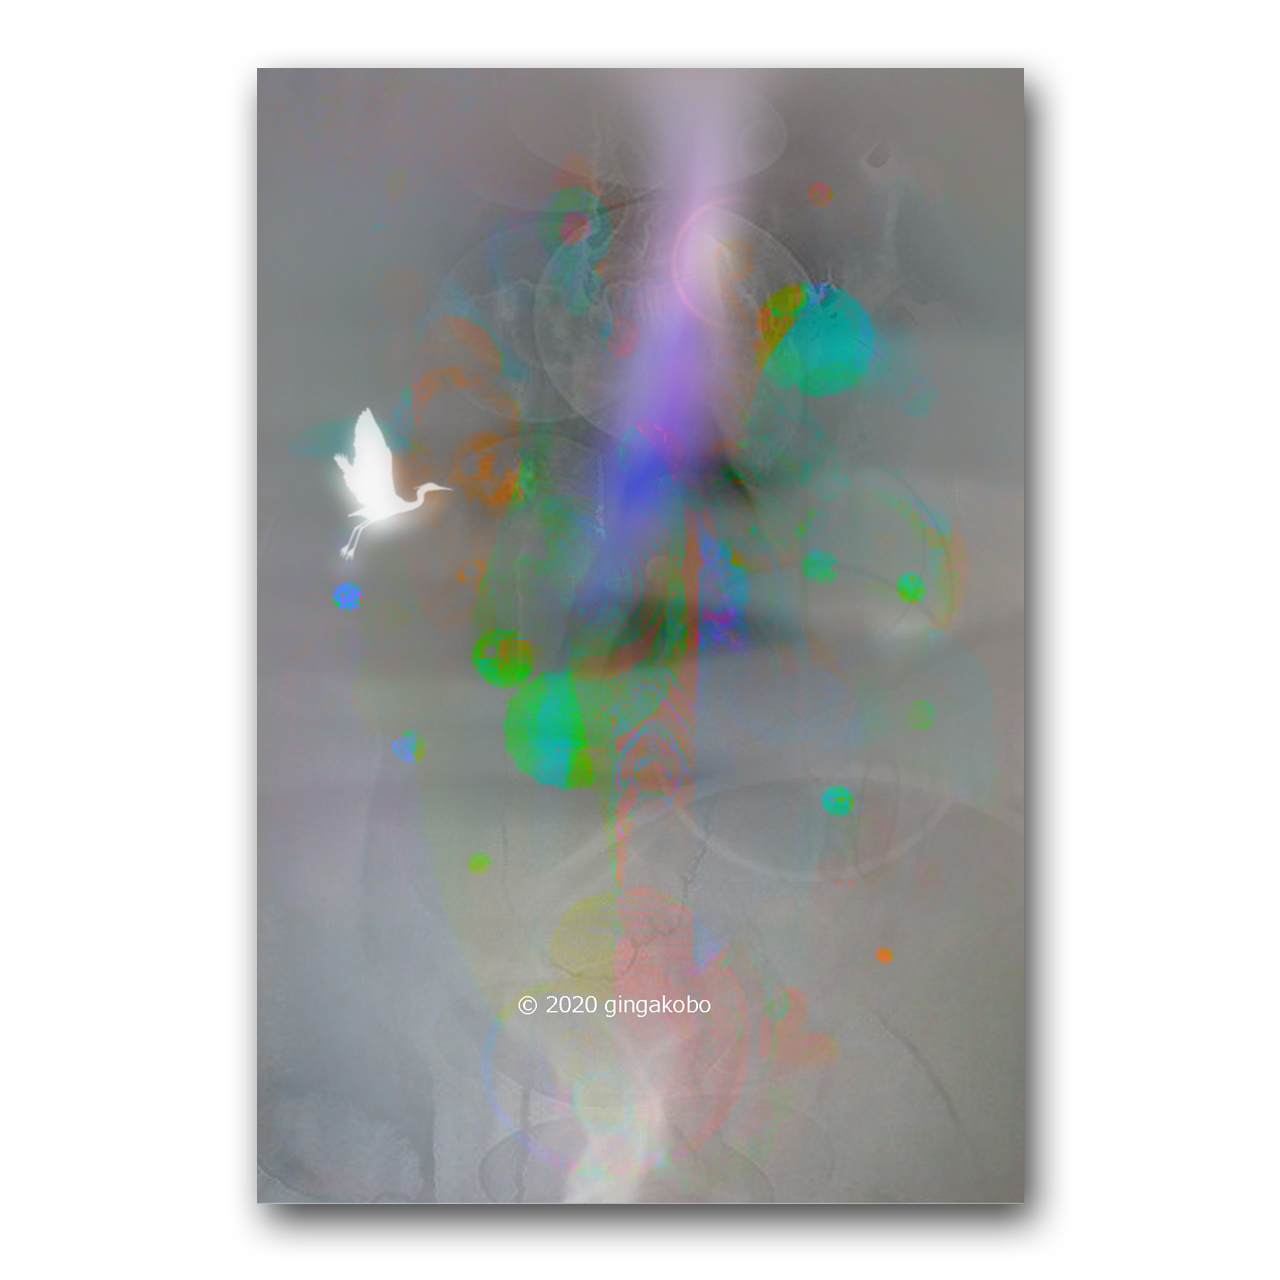 胸の中のしいんとしたヒカリ ほっこり癒しのイラストポストカード2枚組 No 1053 Iichi ハンドメイド クラフト作品 手仕事品の通販